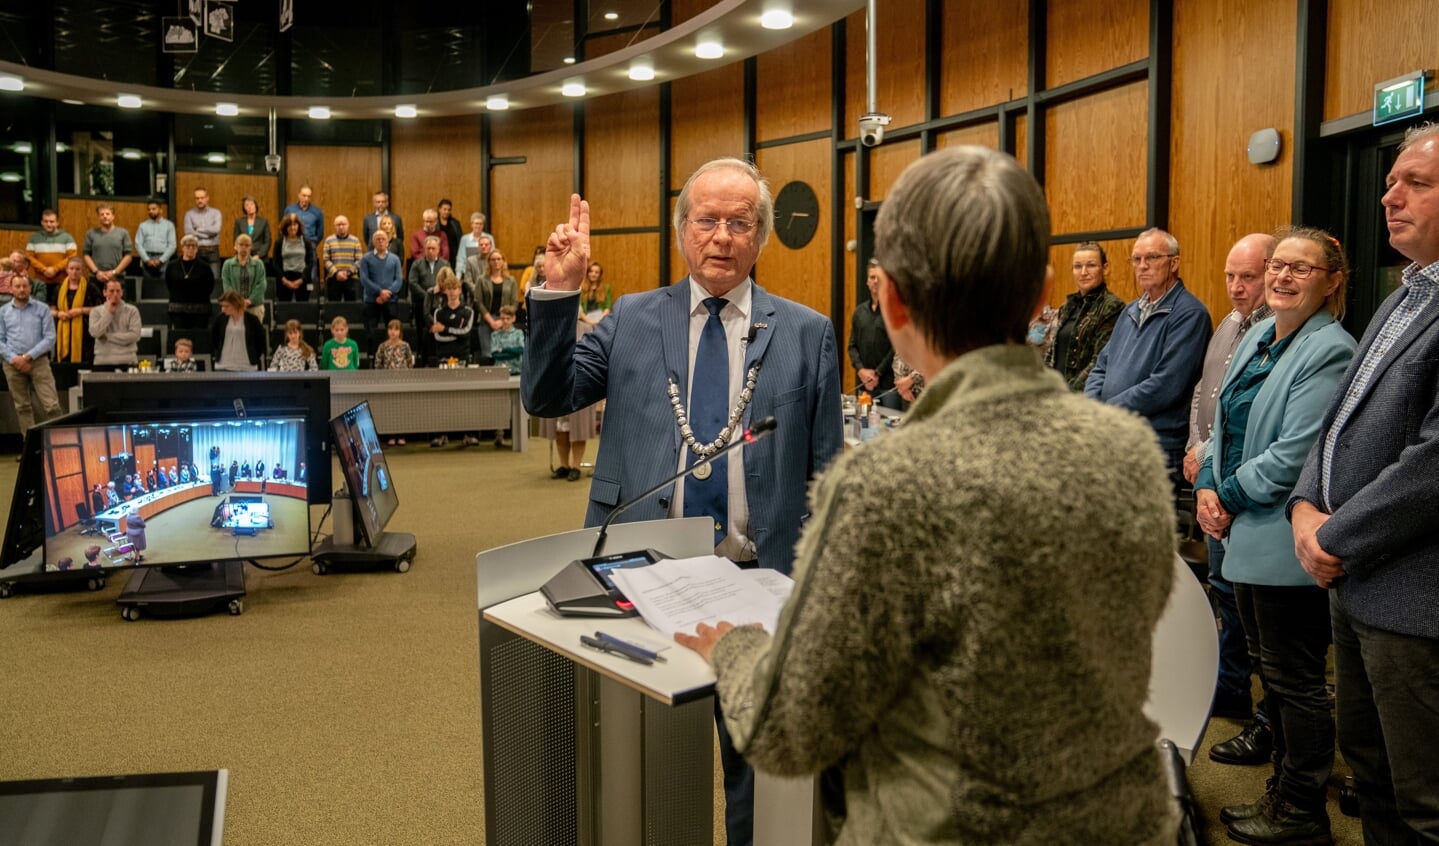 Rikus Jager wordt voor de derde keer beëdigd als burgemeester van de gemeente Westerveld.